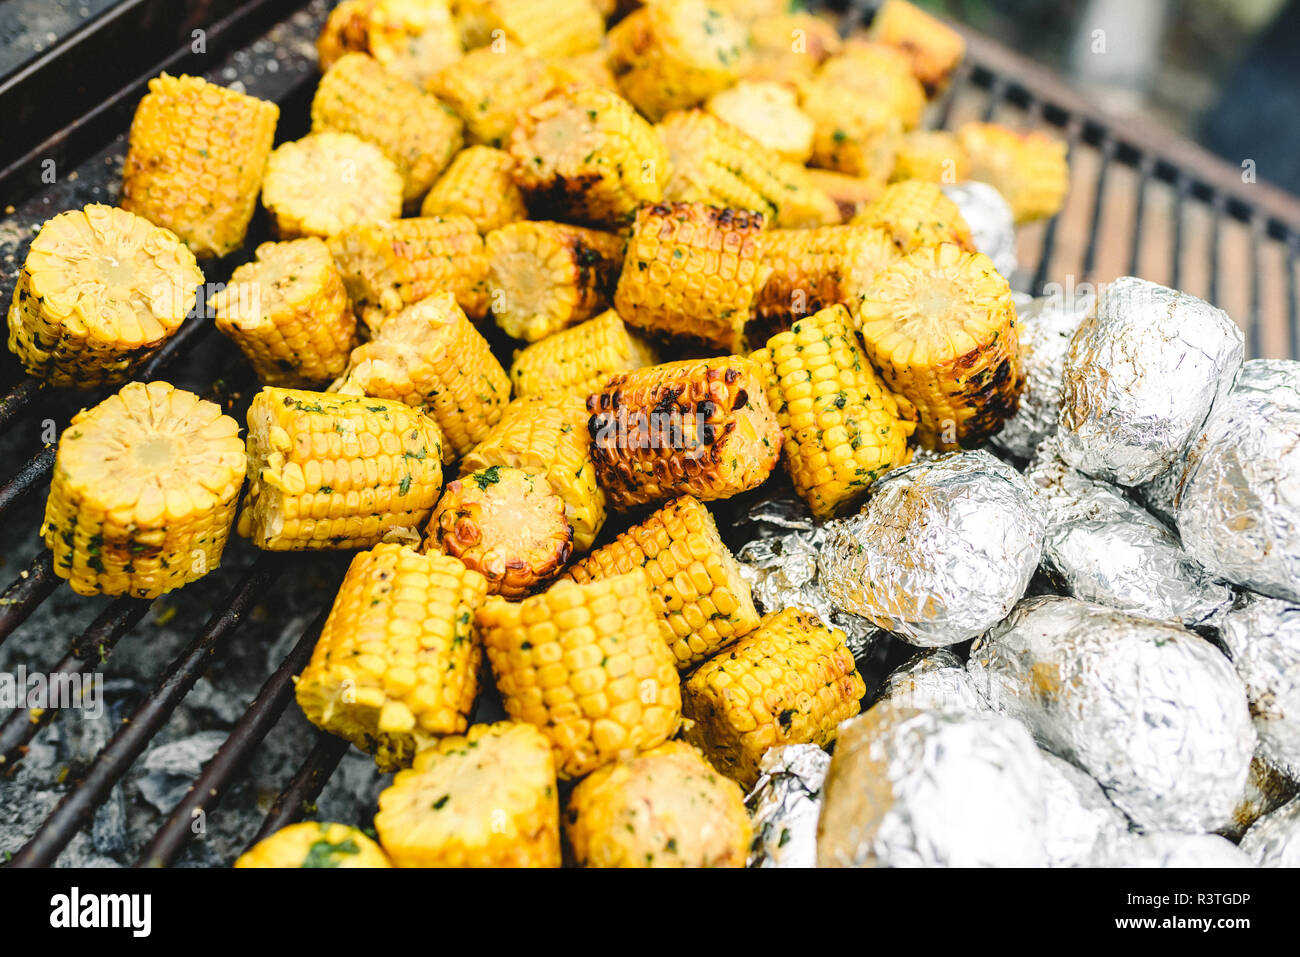 Maiskolben und Kartoffeln in Alufolie auf den Grill Stockfotografie - Alamy